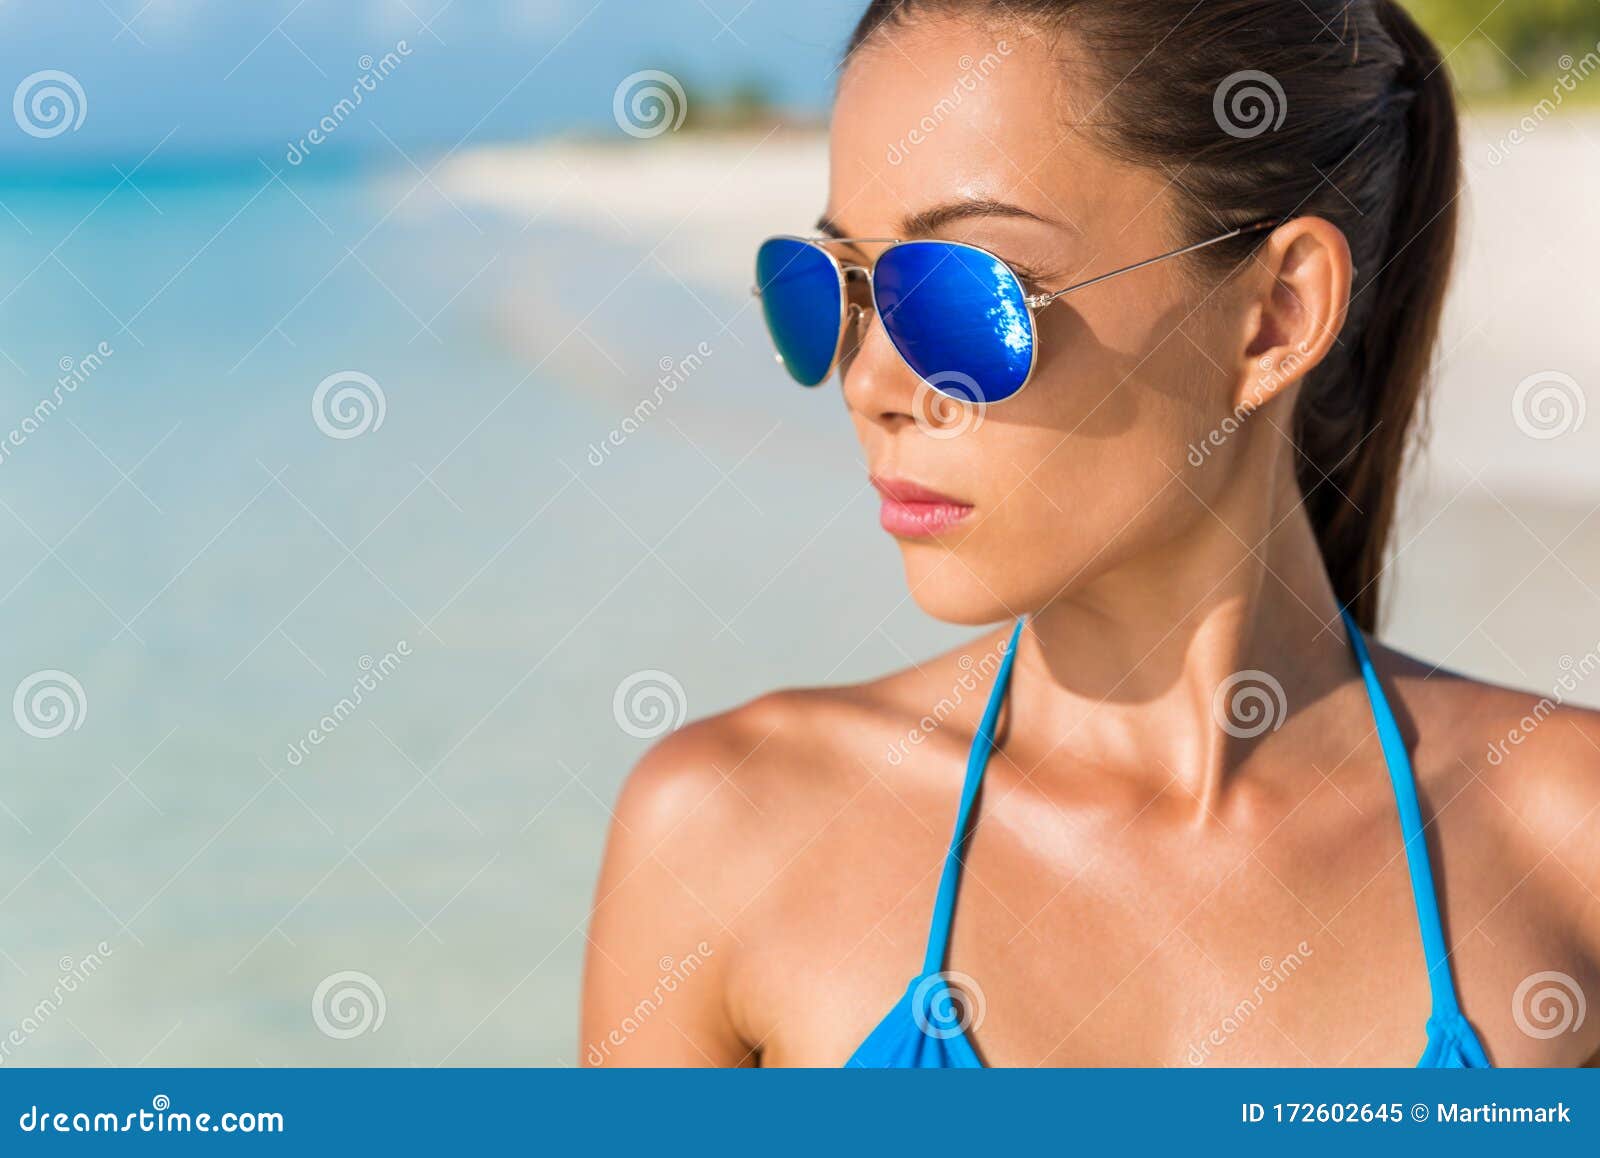 Azul Gafas Sol Sexy Mujer Belleza Modelo De Bikini De Playa De Asia Usando Un Espejo De Moda Para Los Ojos Imagen de archivo Imagen persona, swimsuit: 172602645